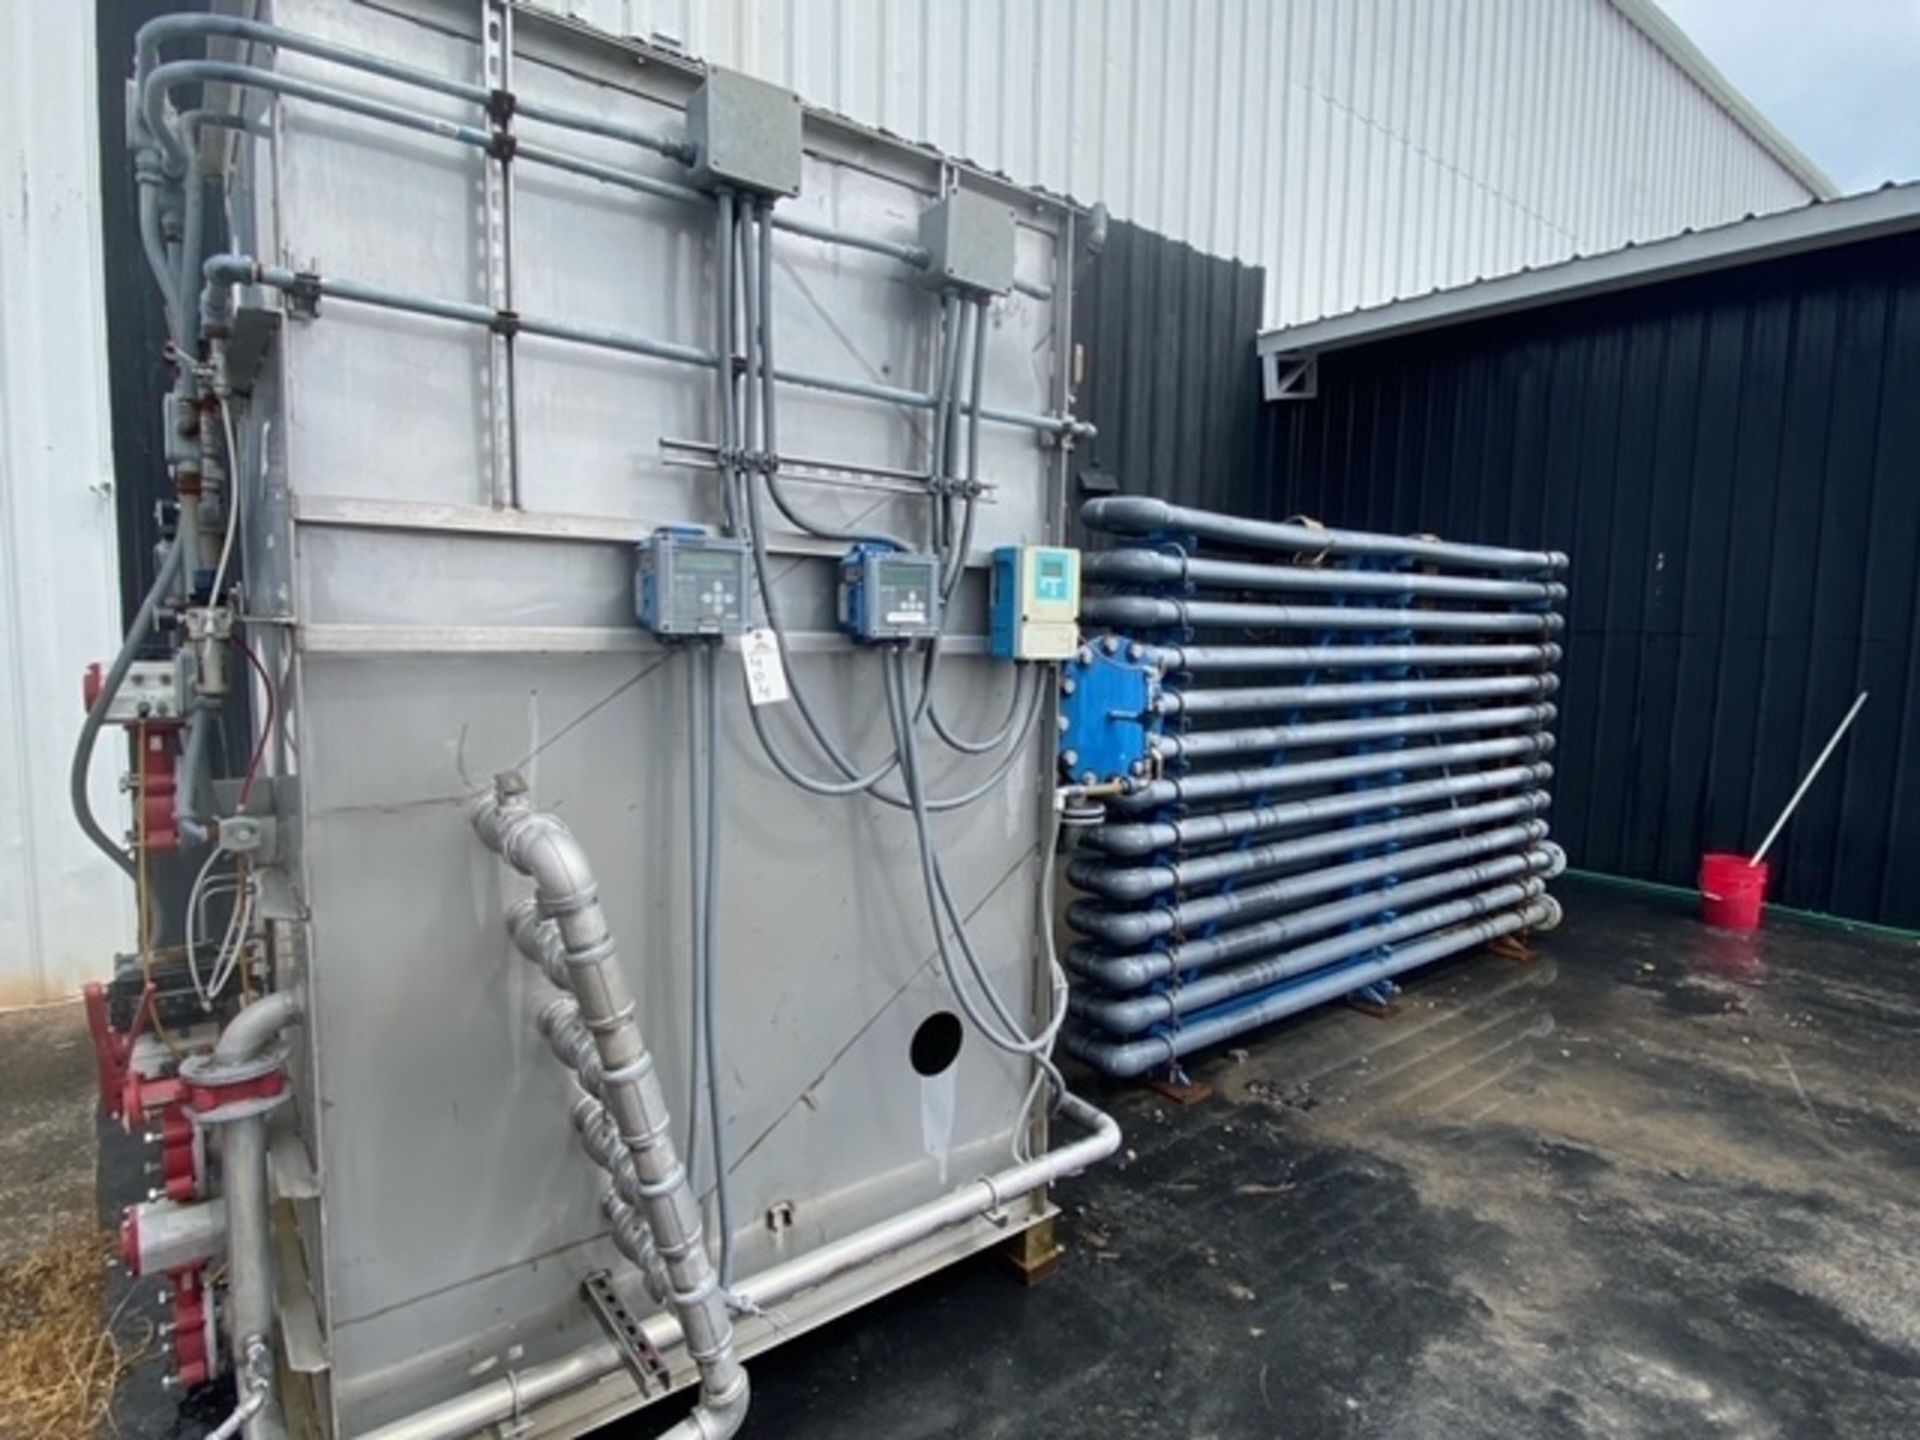 Krofta Waste Treatment System, Model MFV-80, Krofta # 12-K05, Serial # 91362, MFG 2012 with DAF 40